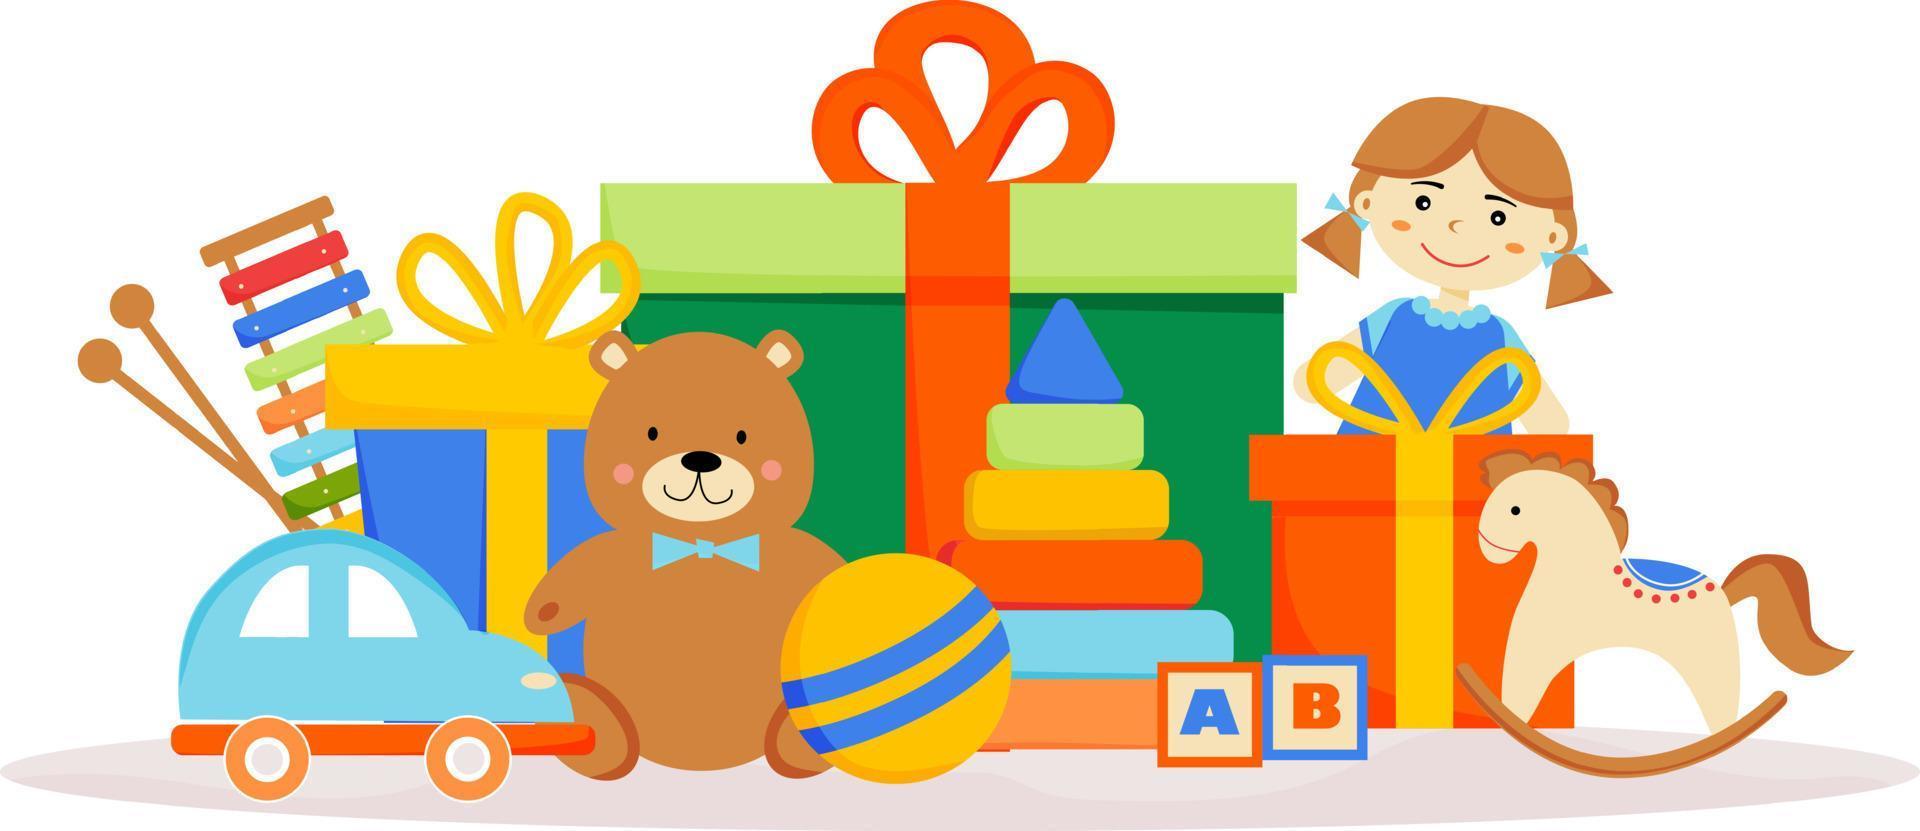 leksaker på bakgrunden av presentförpackningar. födelsedagspresenter. färgglada lådor med presenter. nallebjörn, docka, bil, boll, häst, pyramid, kuber, ksilofon. affisch, banderoll, kort för butik, butik. vektor